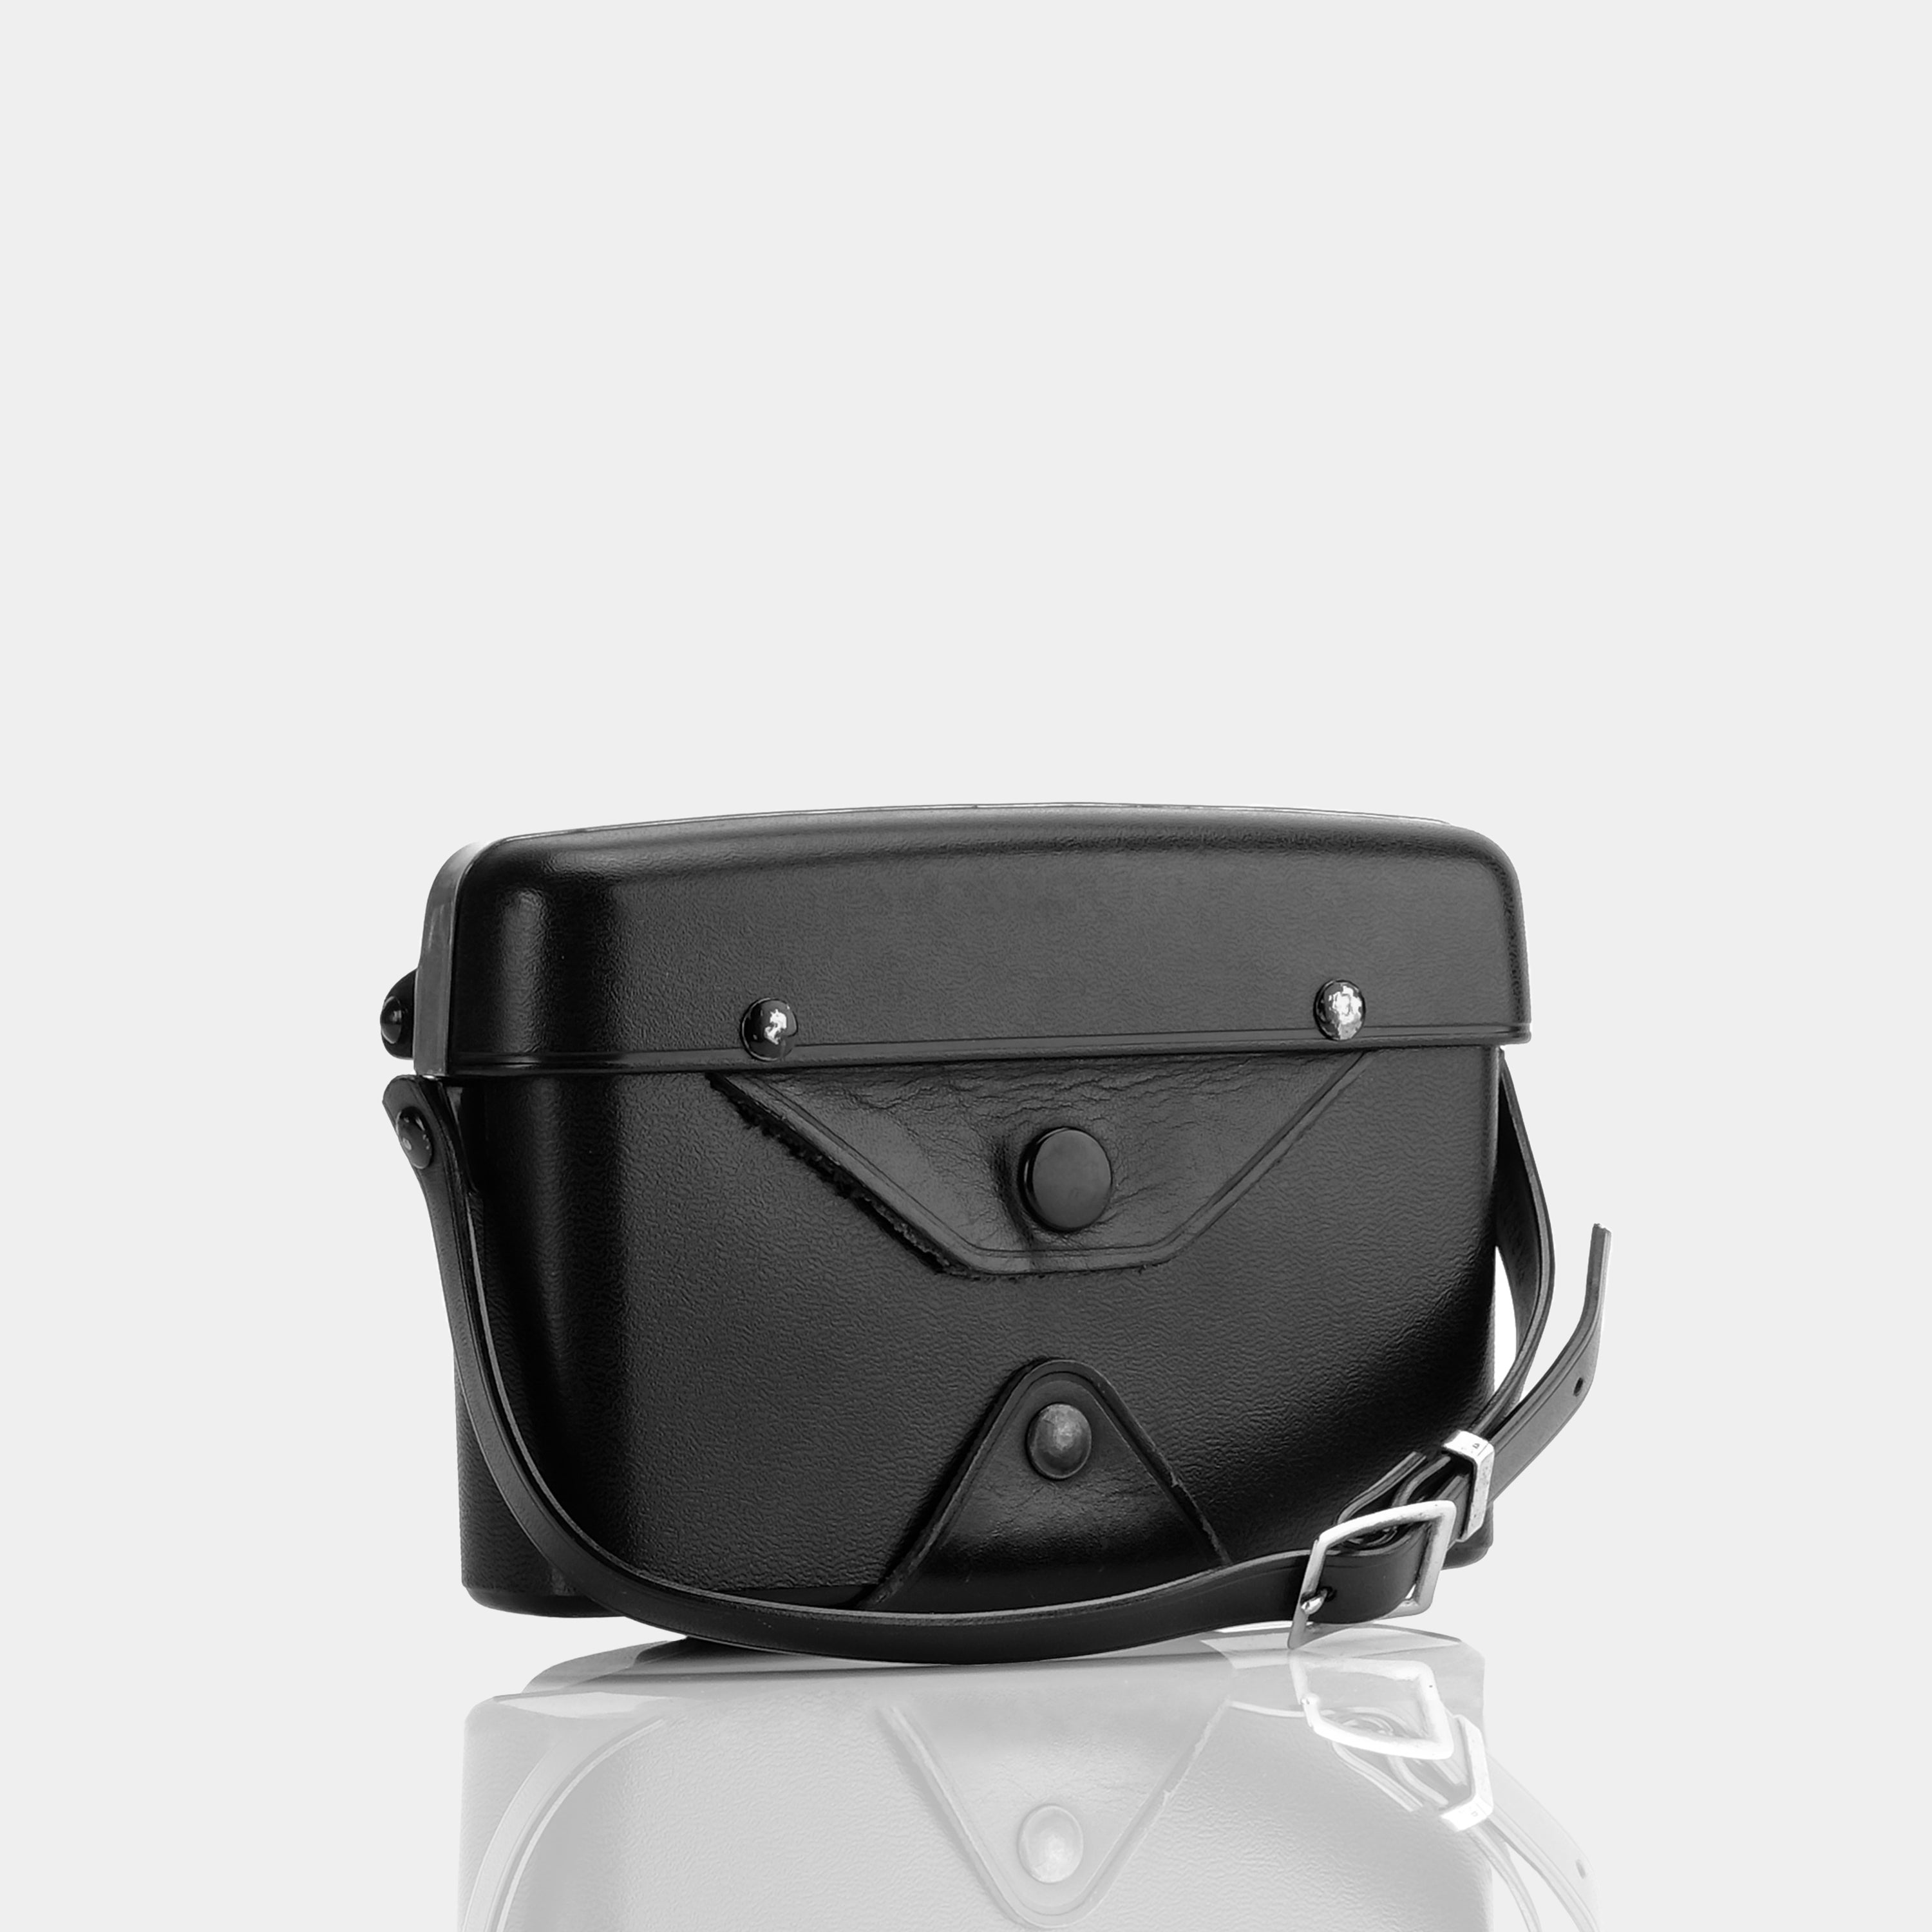 Yashica Black Faux Leather Camera Case